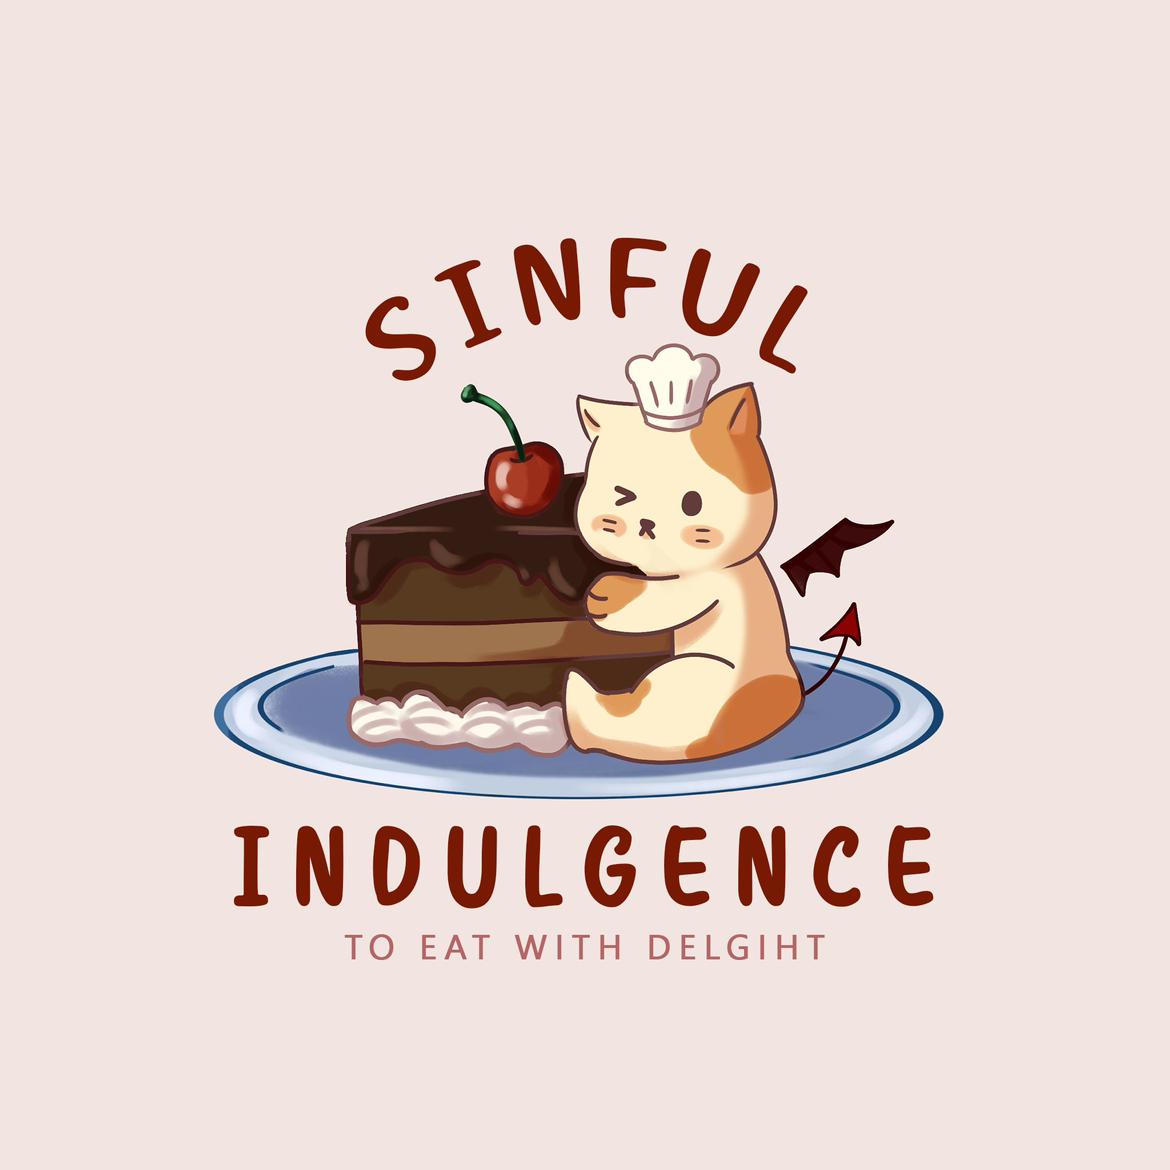 Sinfulndulgence's images